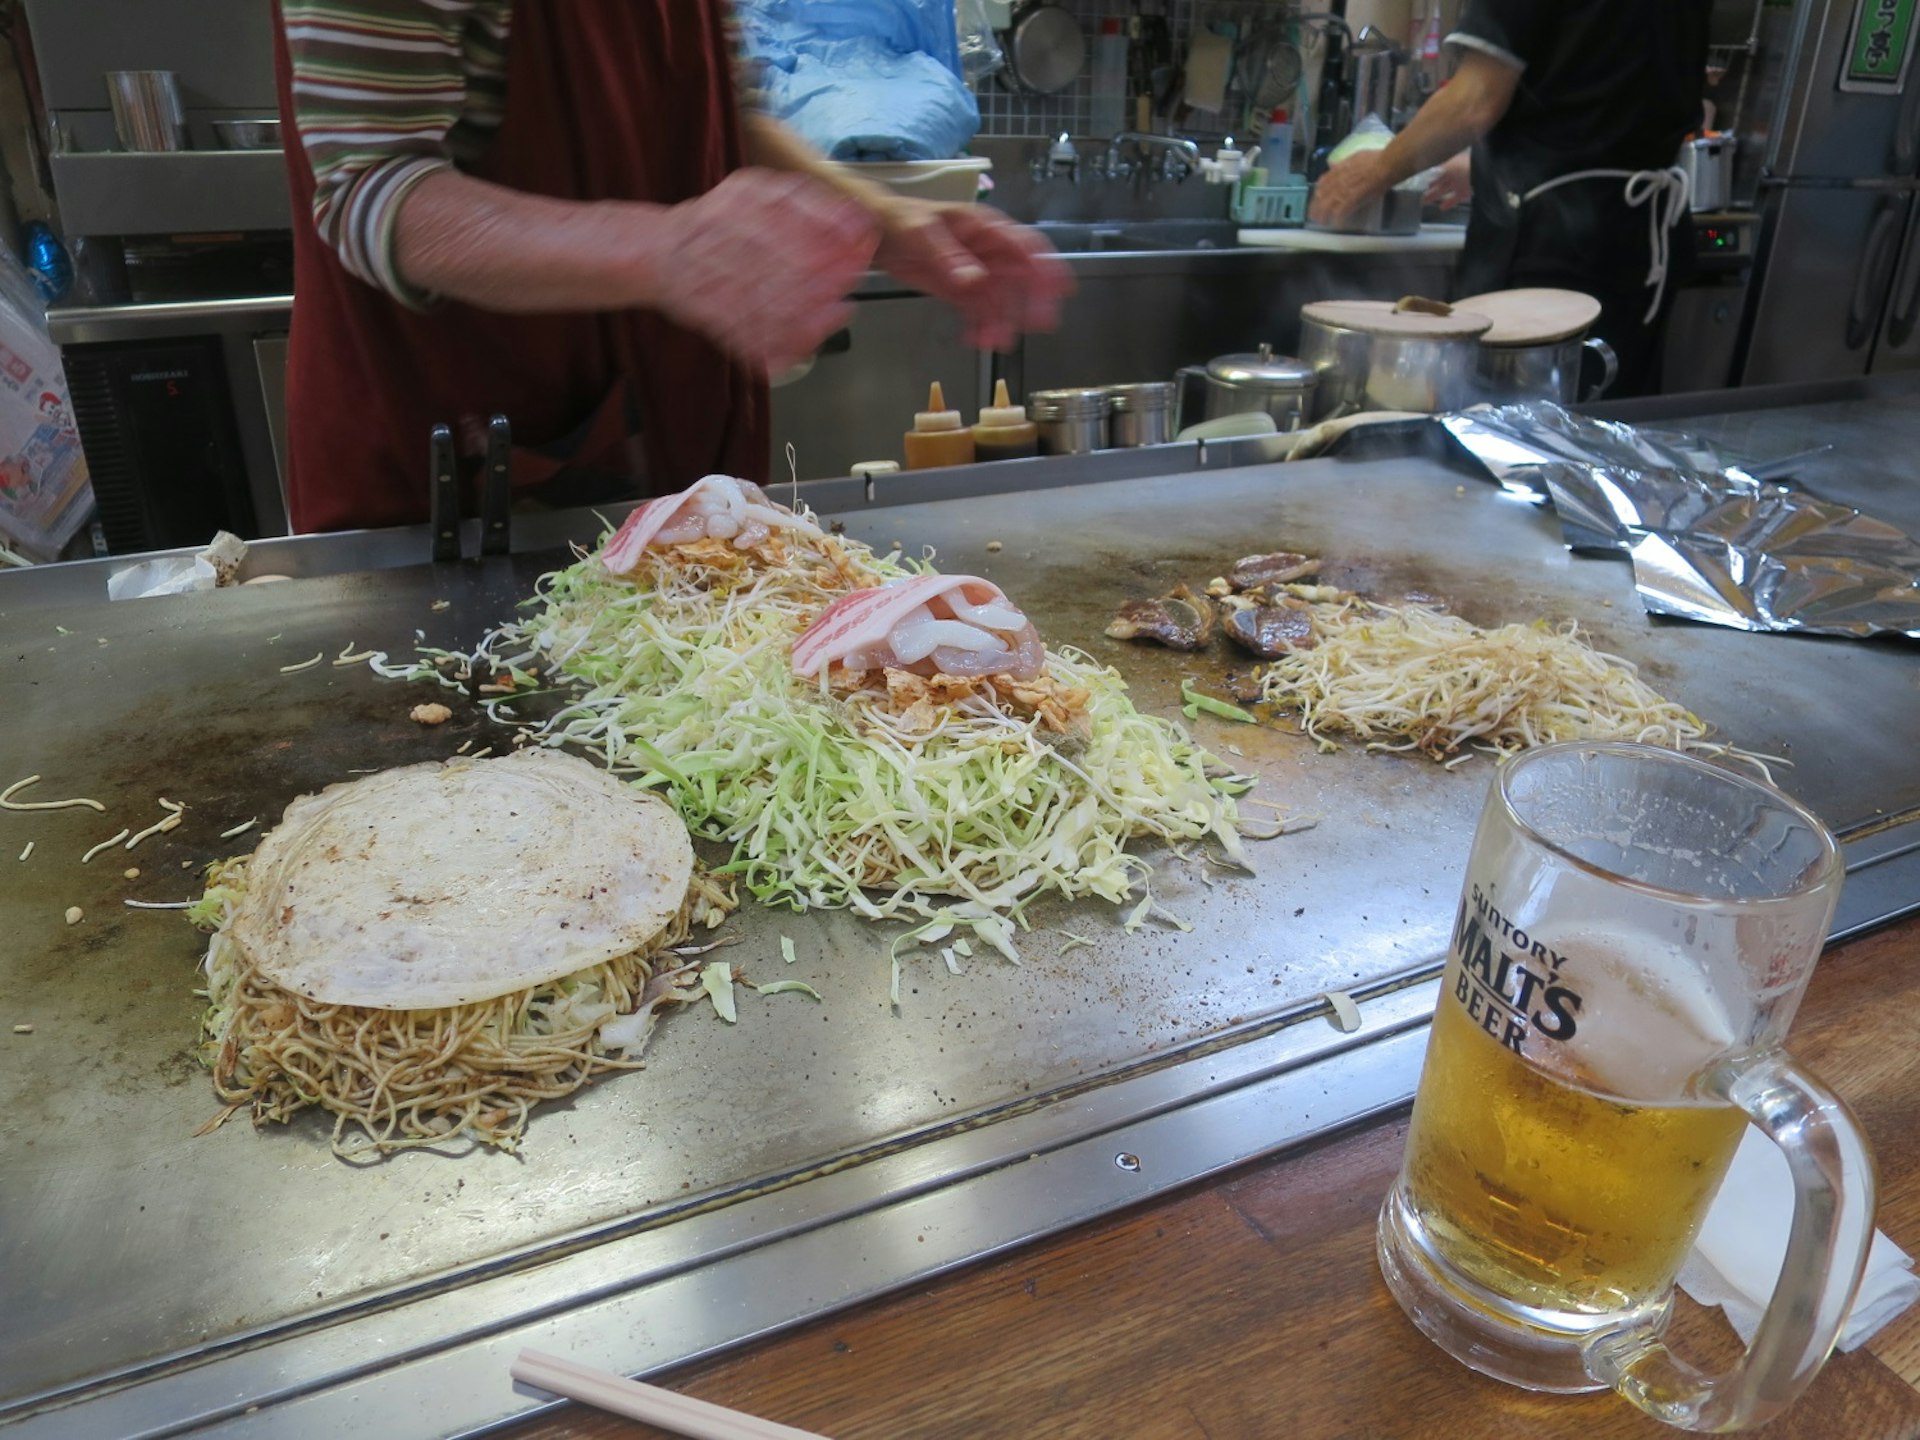 Hiroshima-style okonomiyaki being prepared